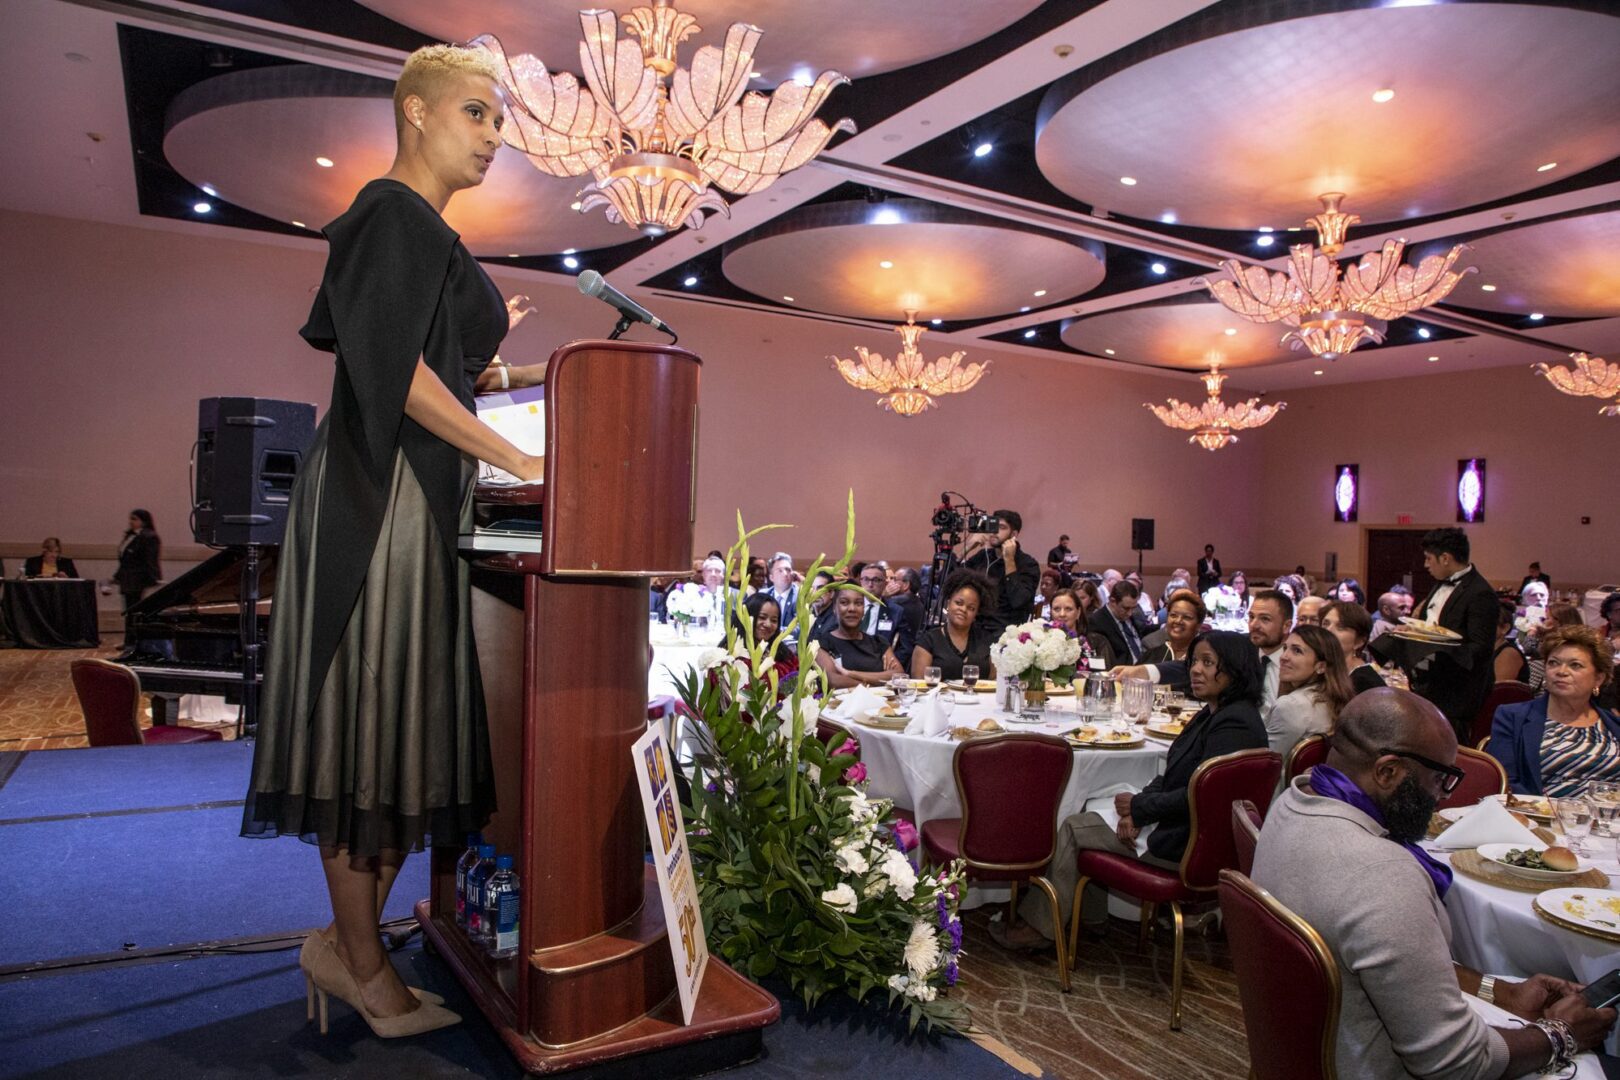 A woman giving a speech at a banquet.